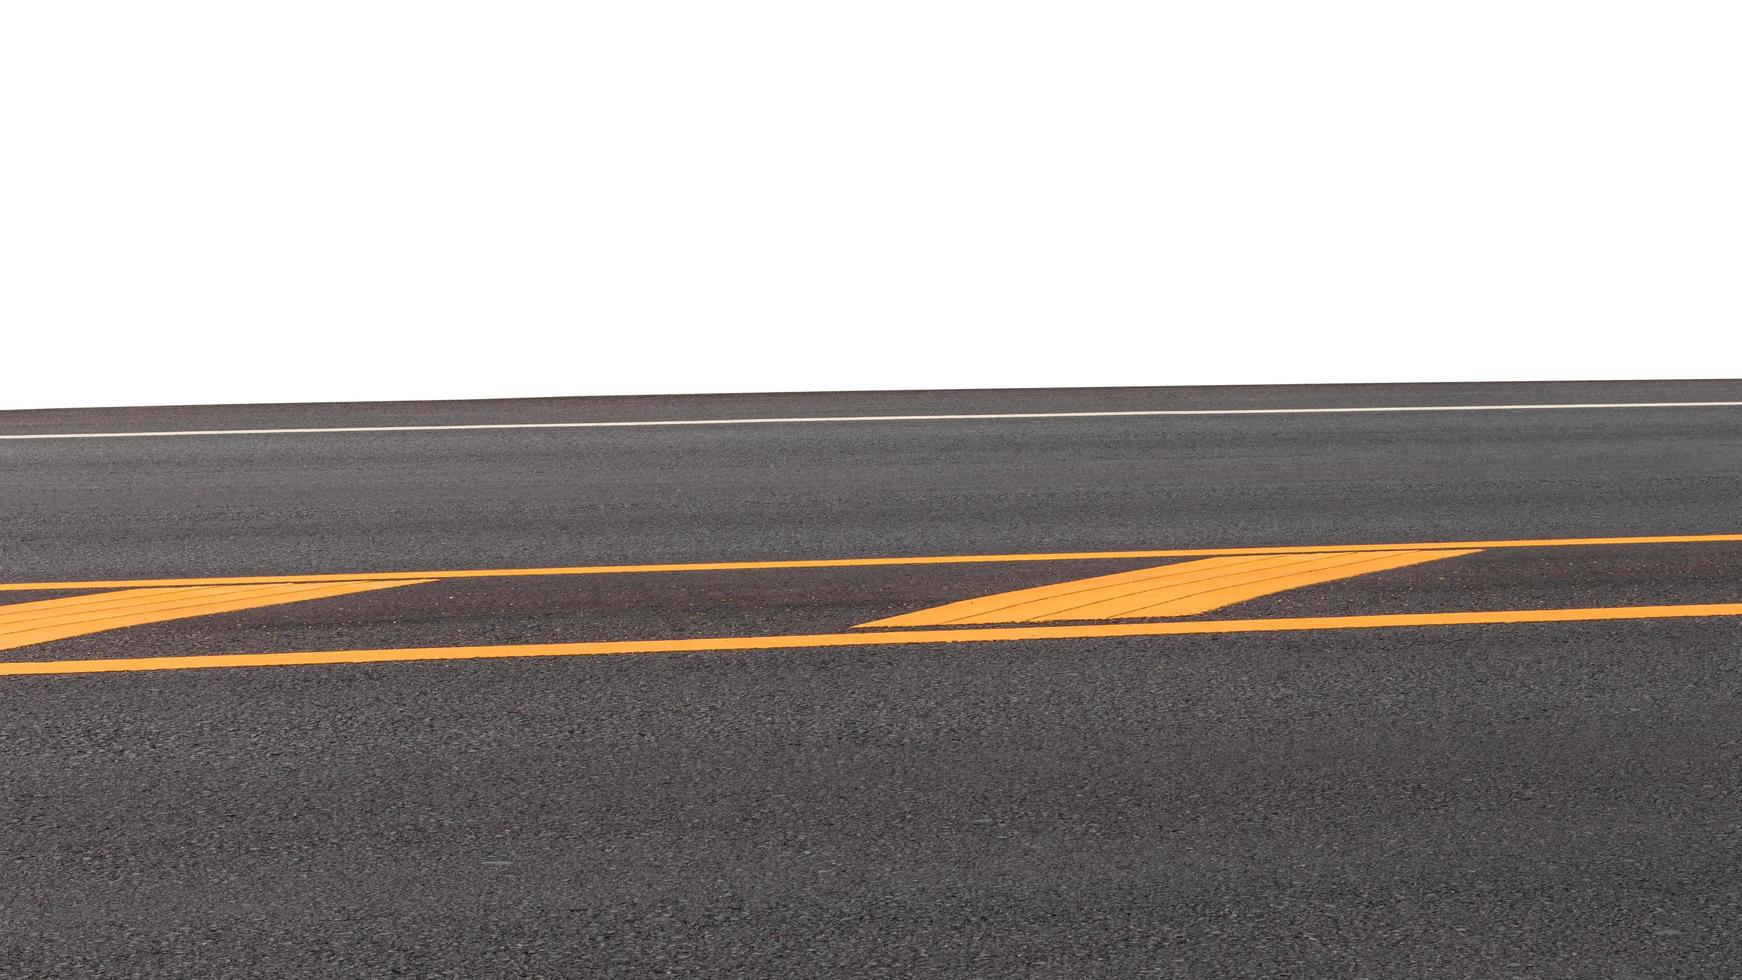 nuevo fondo de carretera asfaltada con líneas amarillas. foto